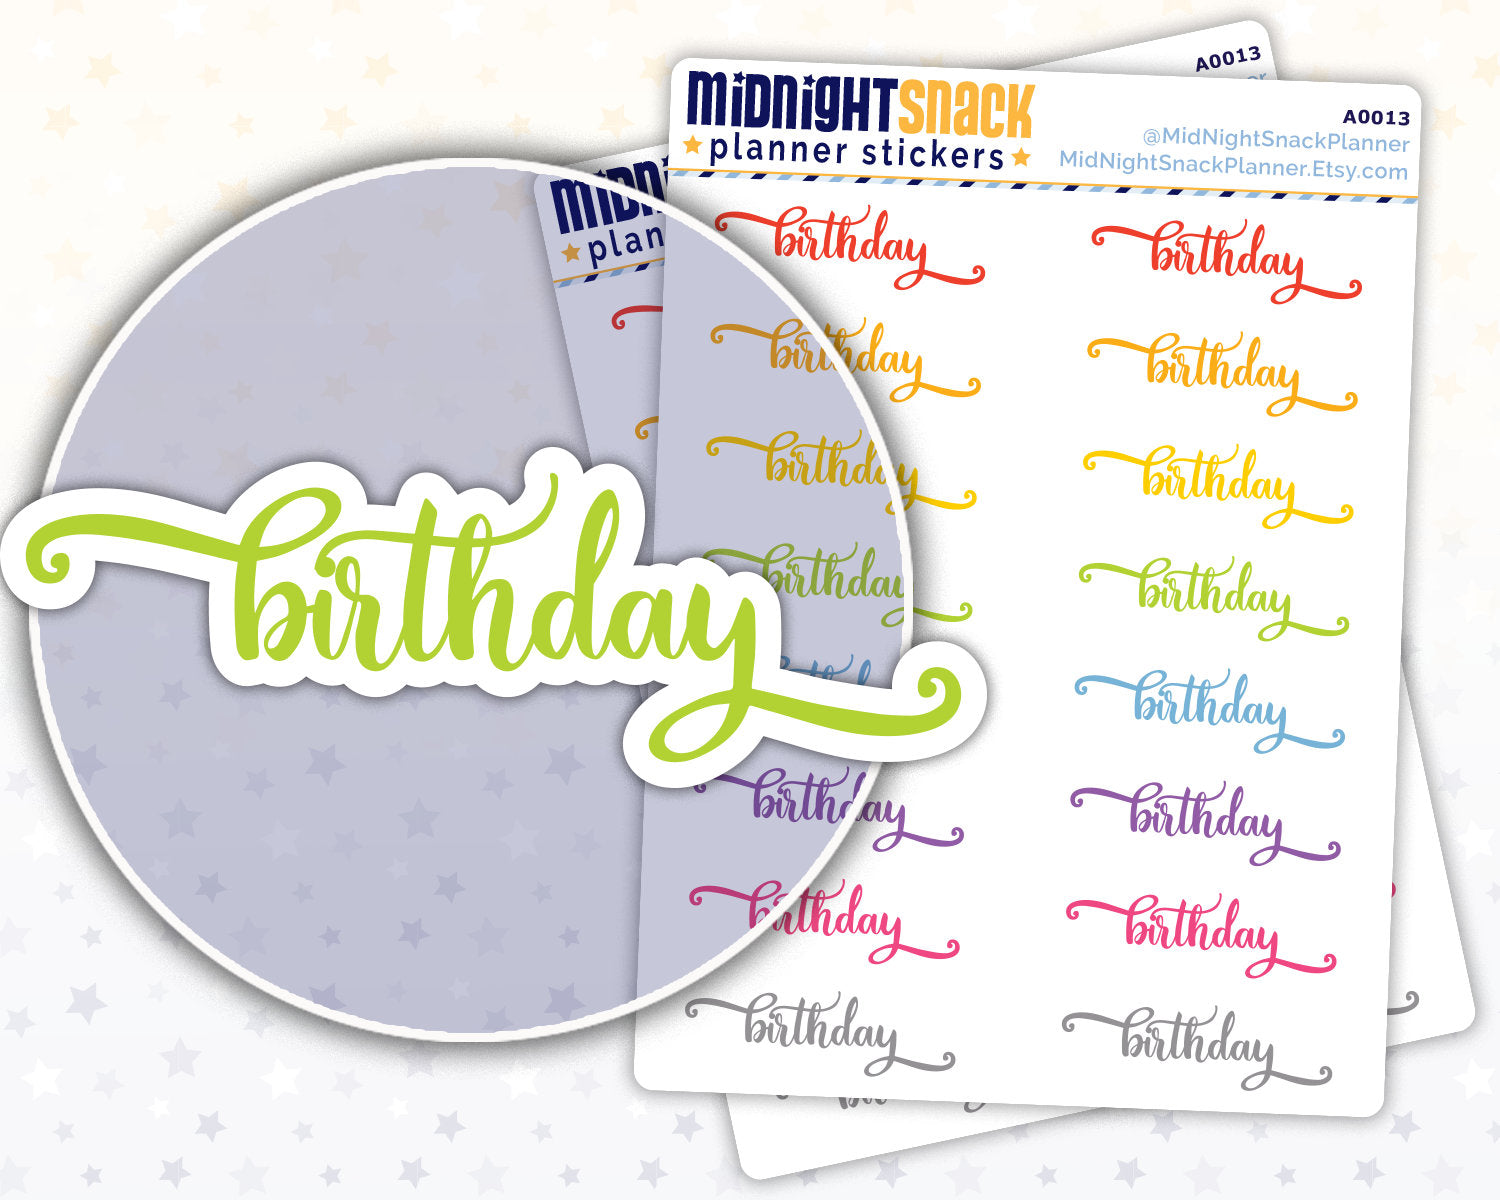 Birthday Script Word Planner Stickers Midnight Snack Planner